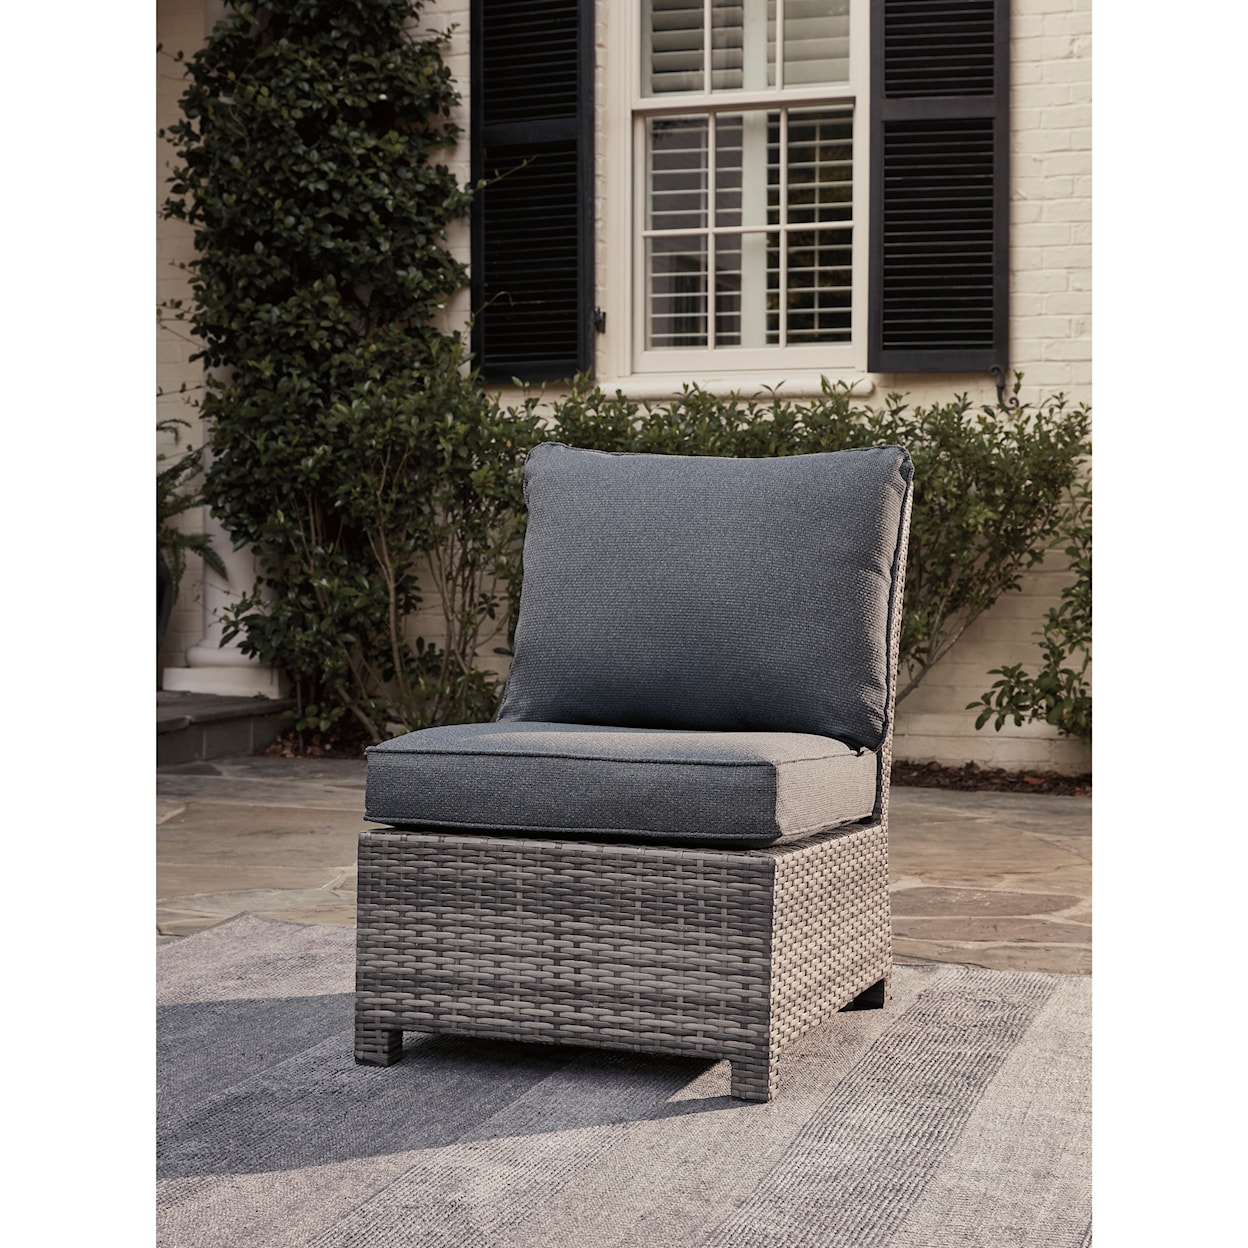 StyleLine Salem Beach Armless Chair with Cushion